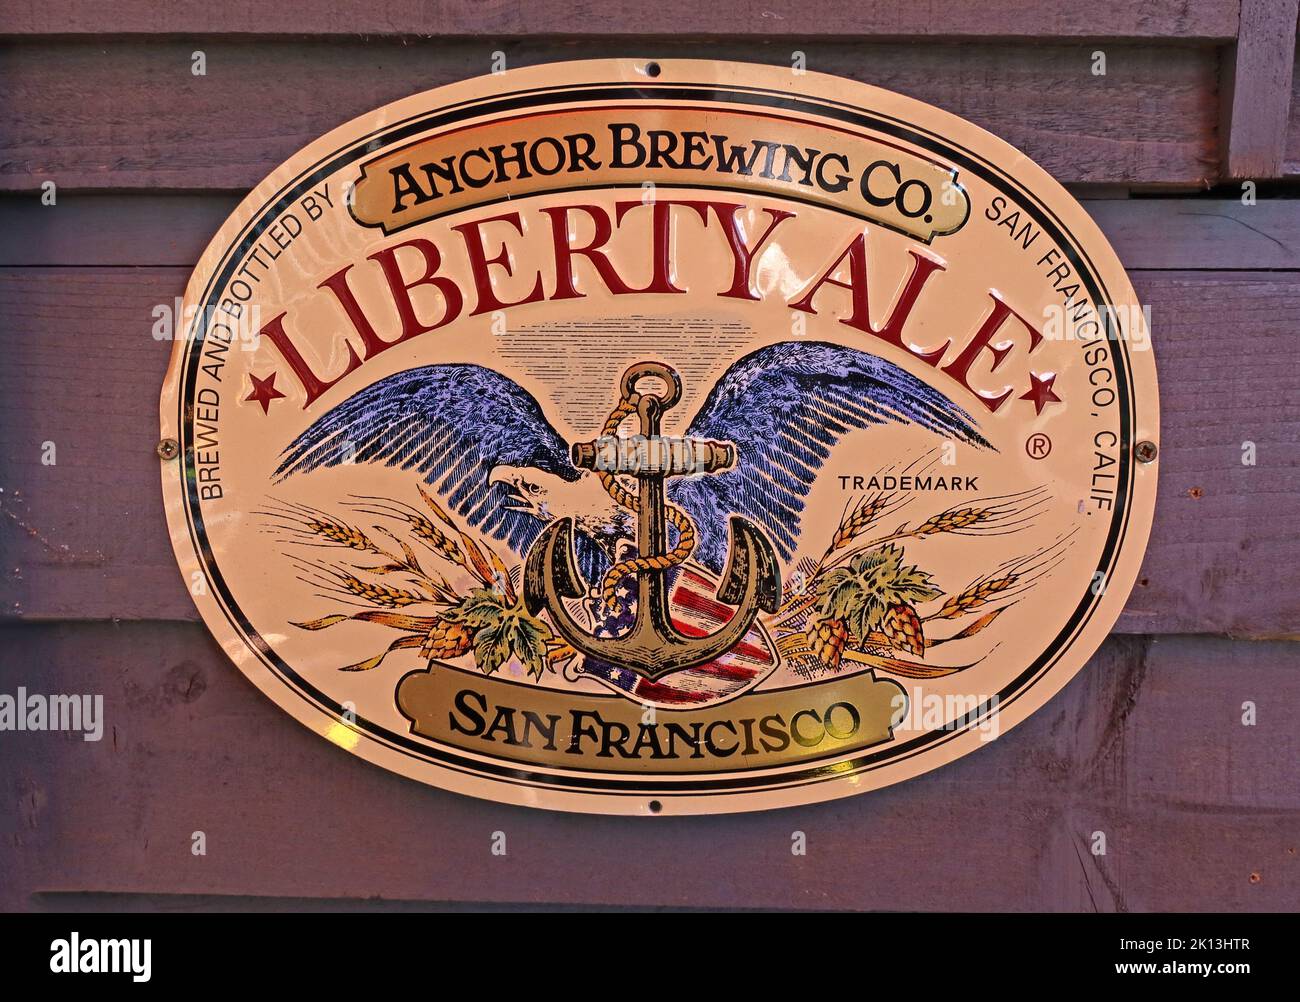 Anchor Brewing Co, Liberty Ale, marchio di metallo spot, San Francisco, Calif, STATI UNITI Foto Stock